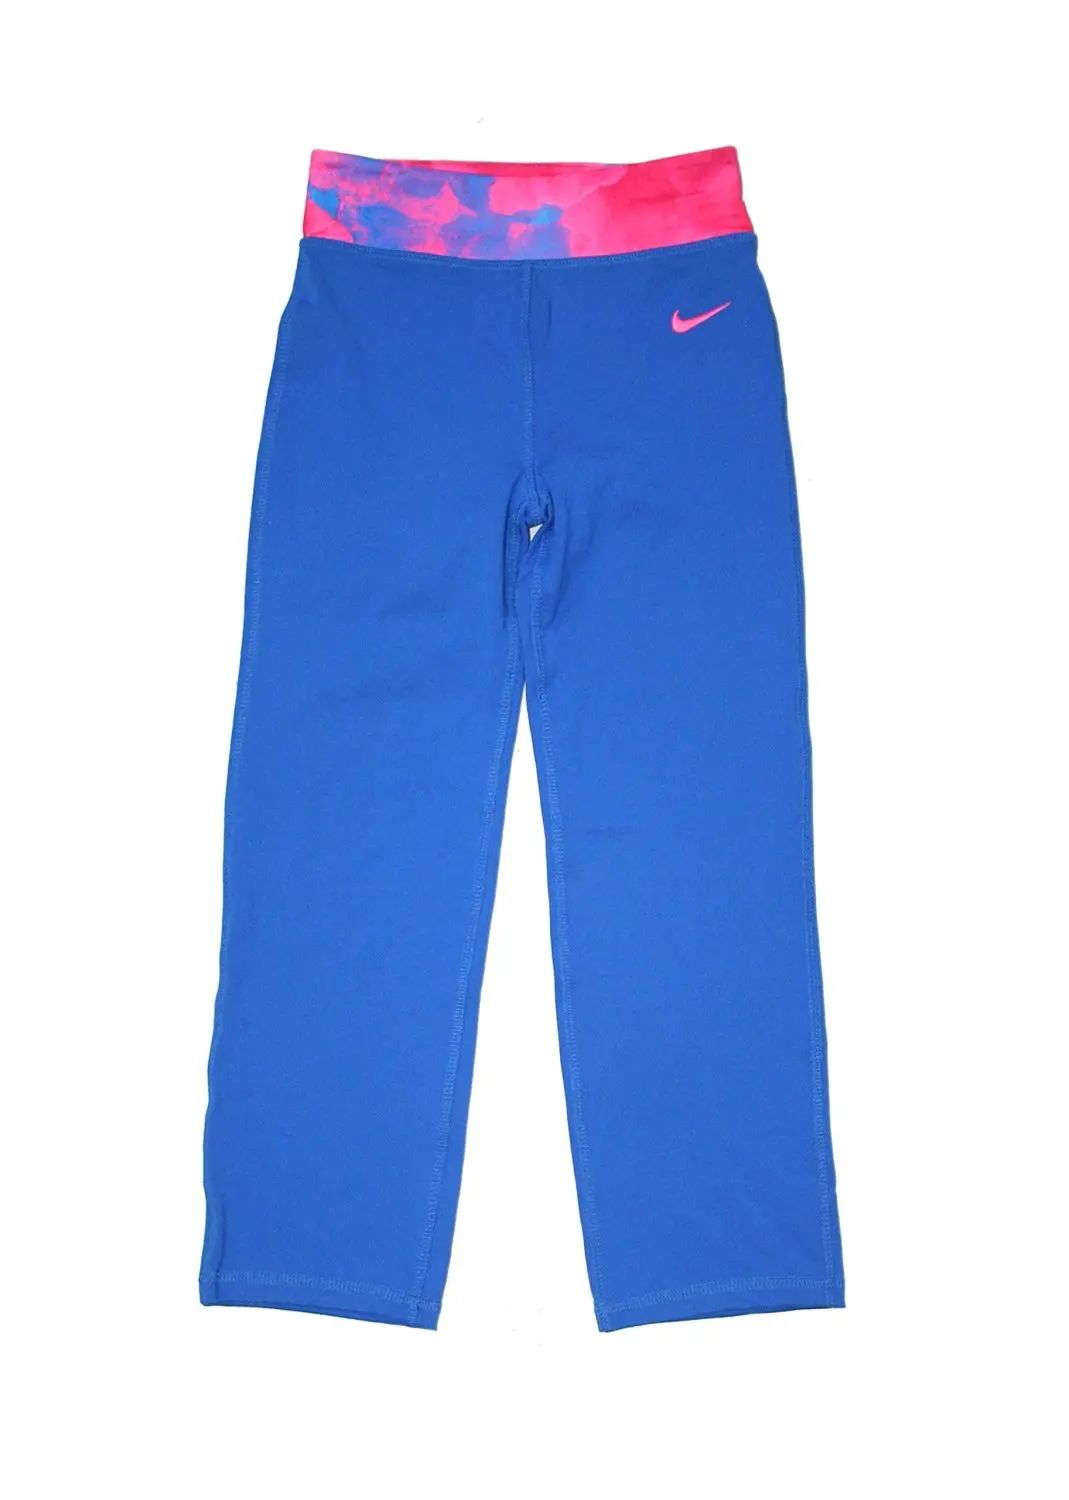 Buy Danskin Now Girls Foldover Yoga Pants in Cheap Price on Alibaba.com